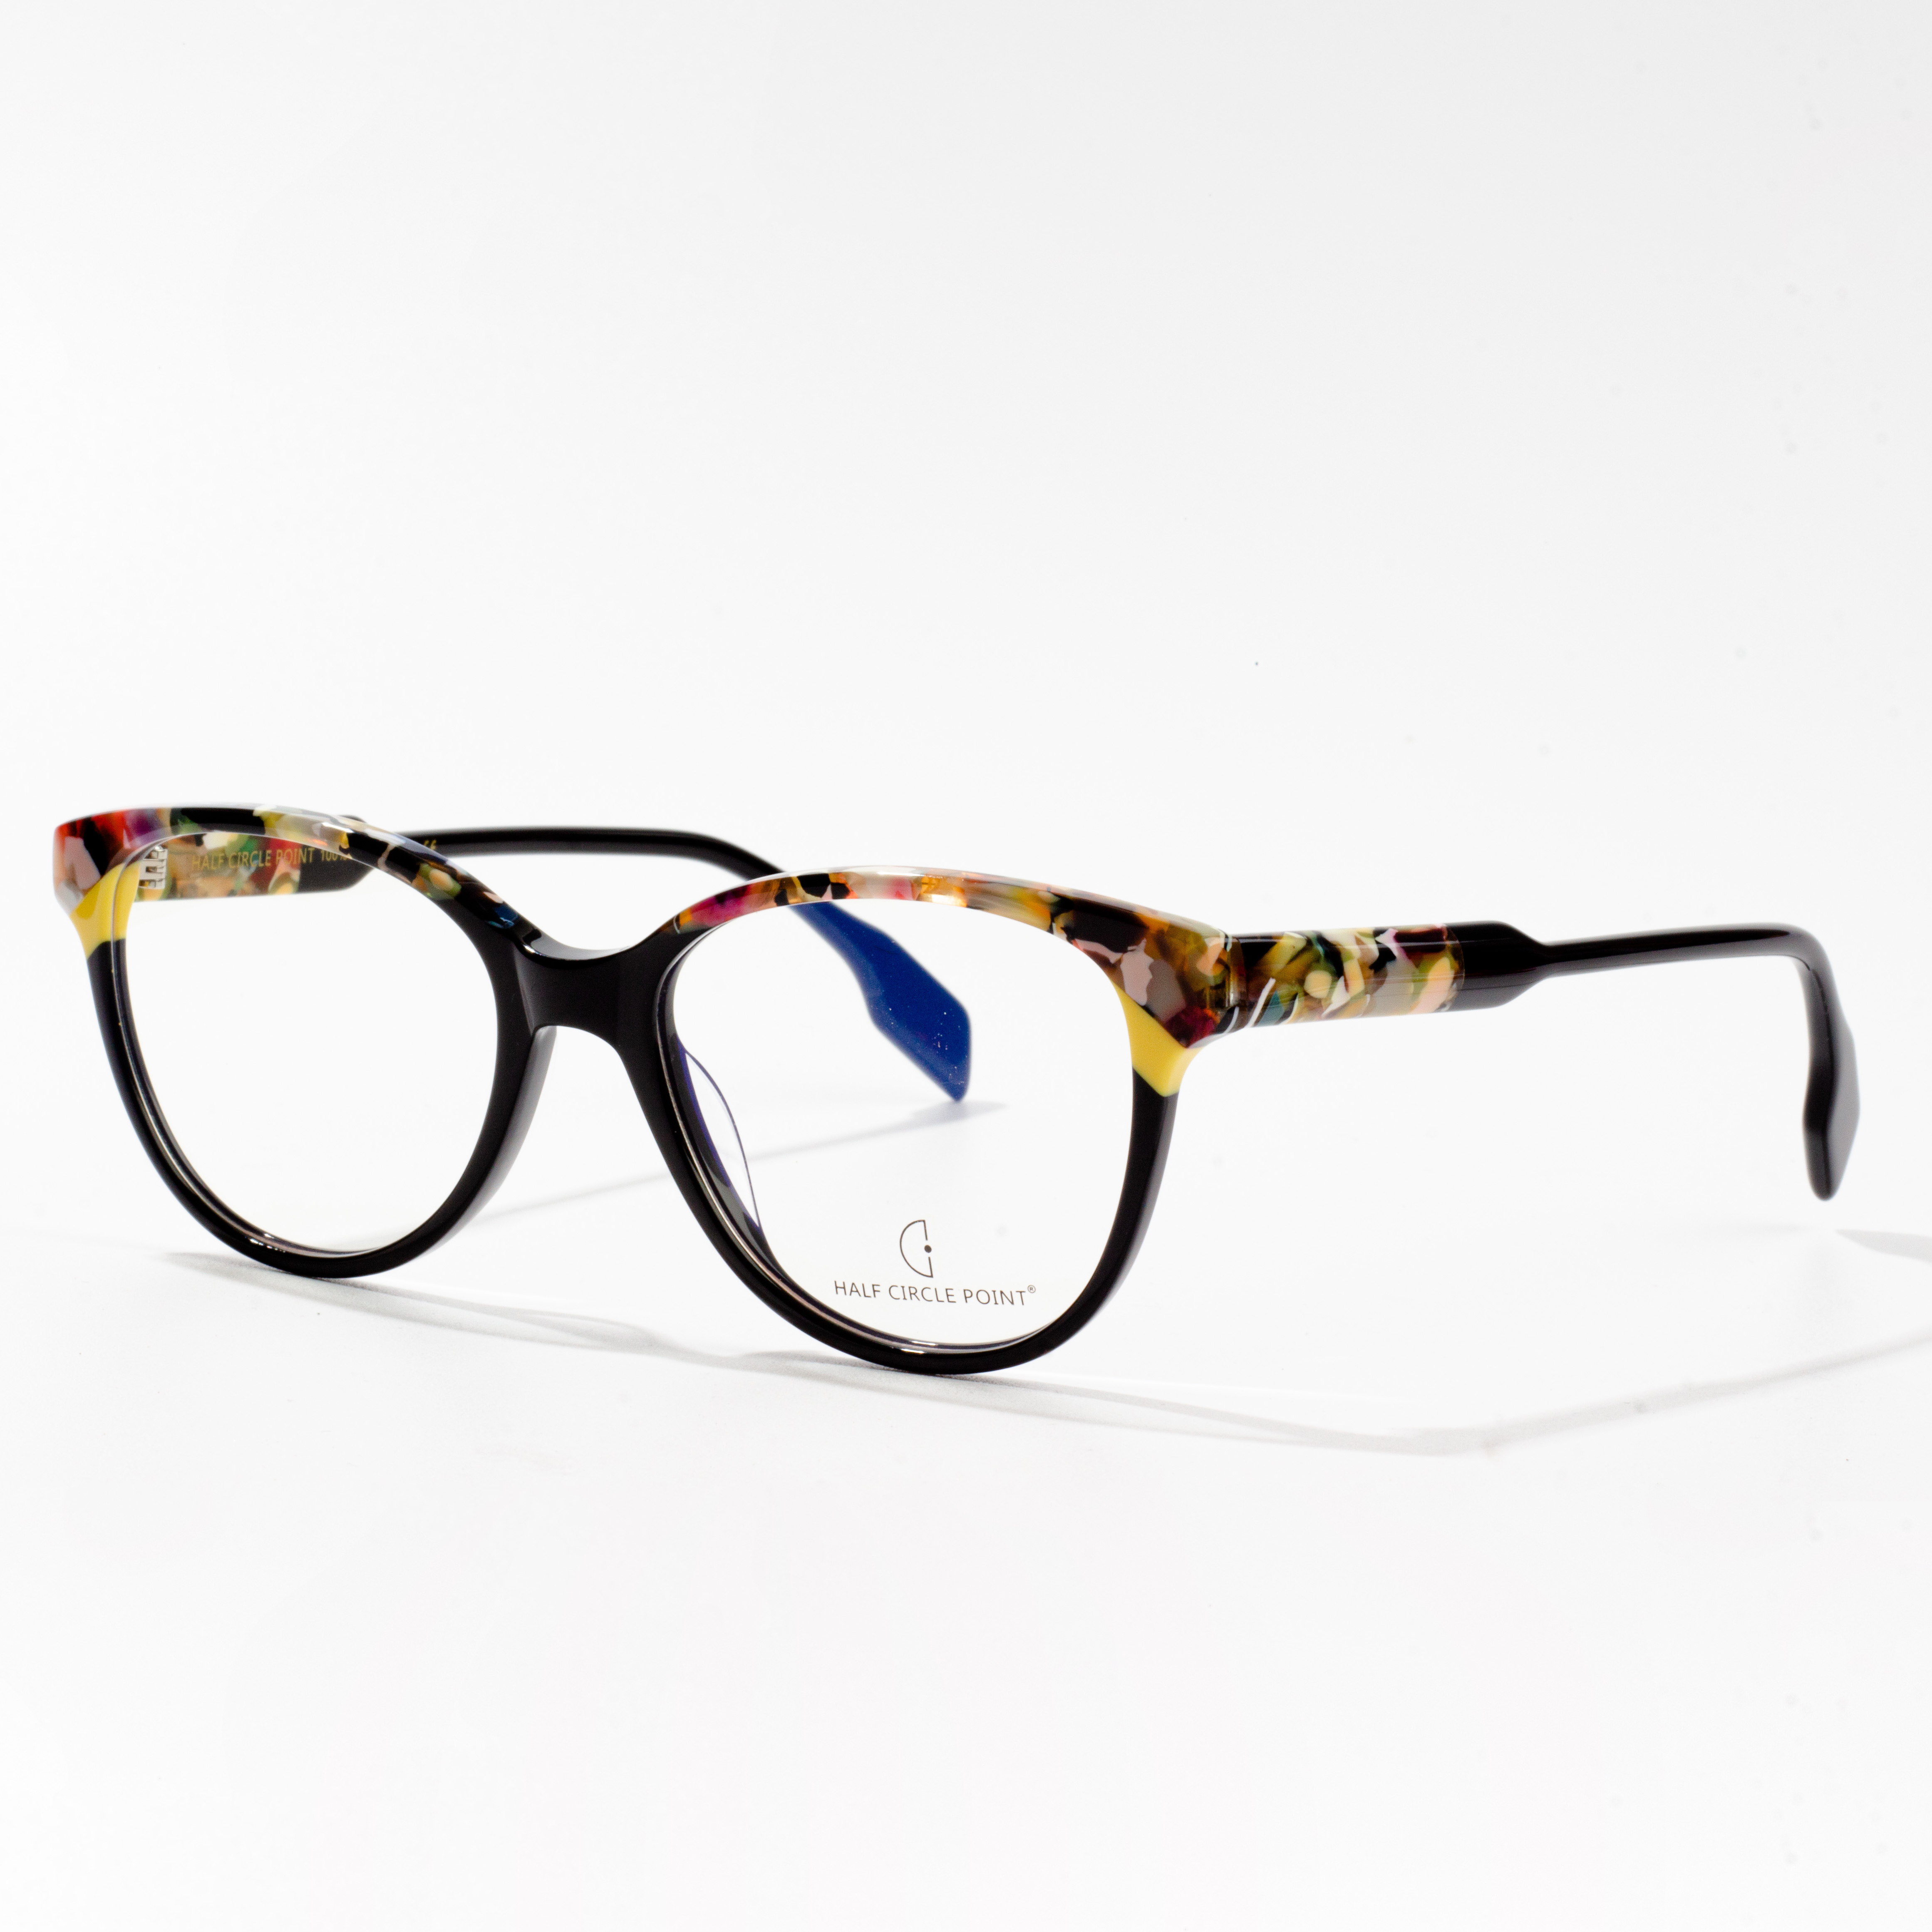 Kerek szemüvegkeretek - Unisex acetát szemüvegkeretek vásárlása